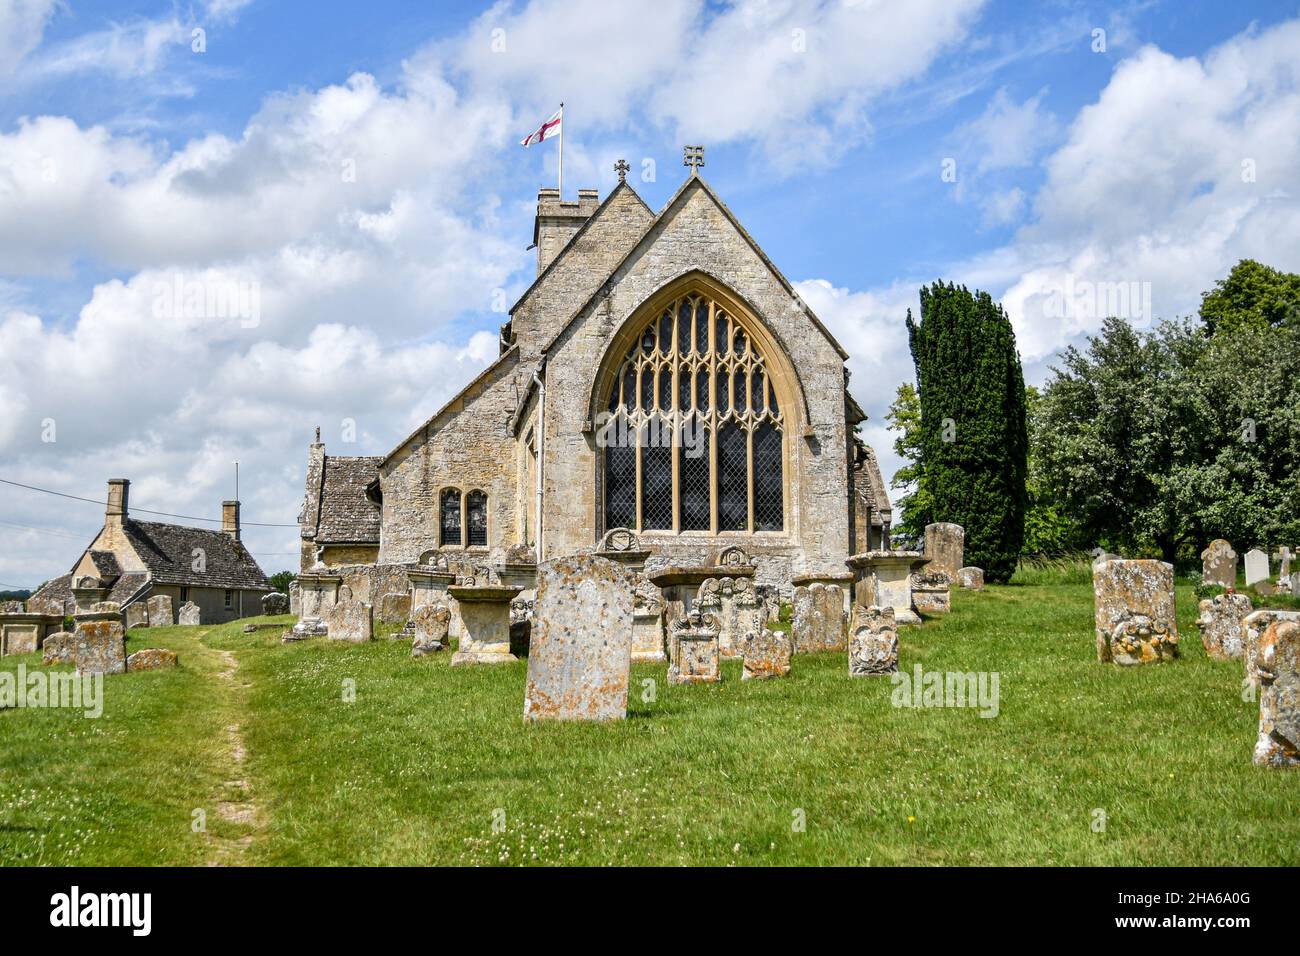 L'église Sainte Marie du 12th siècle, Swinbrook dans les Cotswolds, Angleterre Banque D'Images